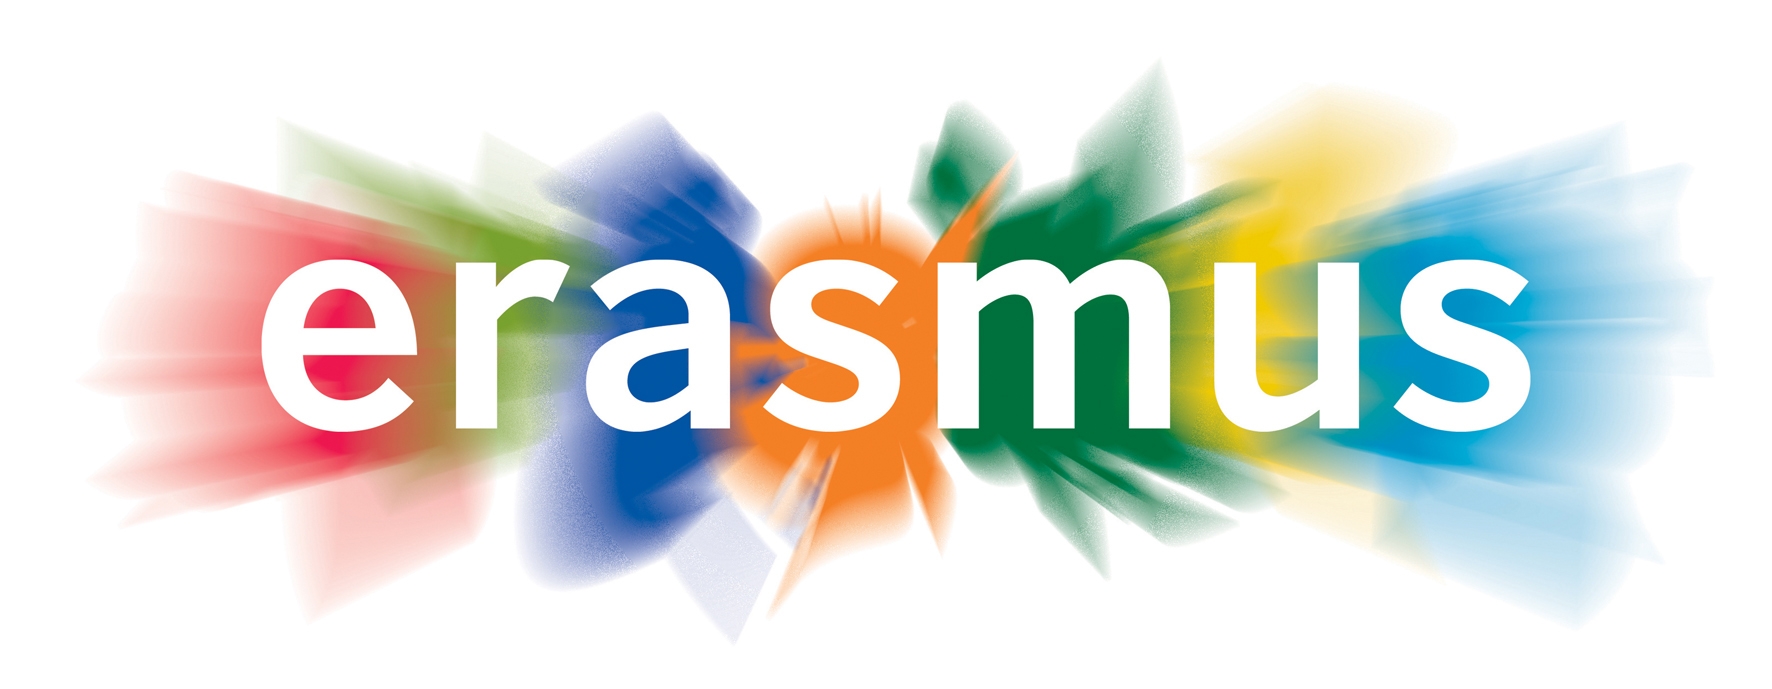 Bando di selezione per mobilità Erasmus+ per traineeship. Scadenza 20 febbraio 2015